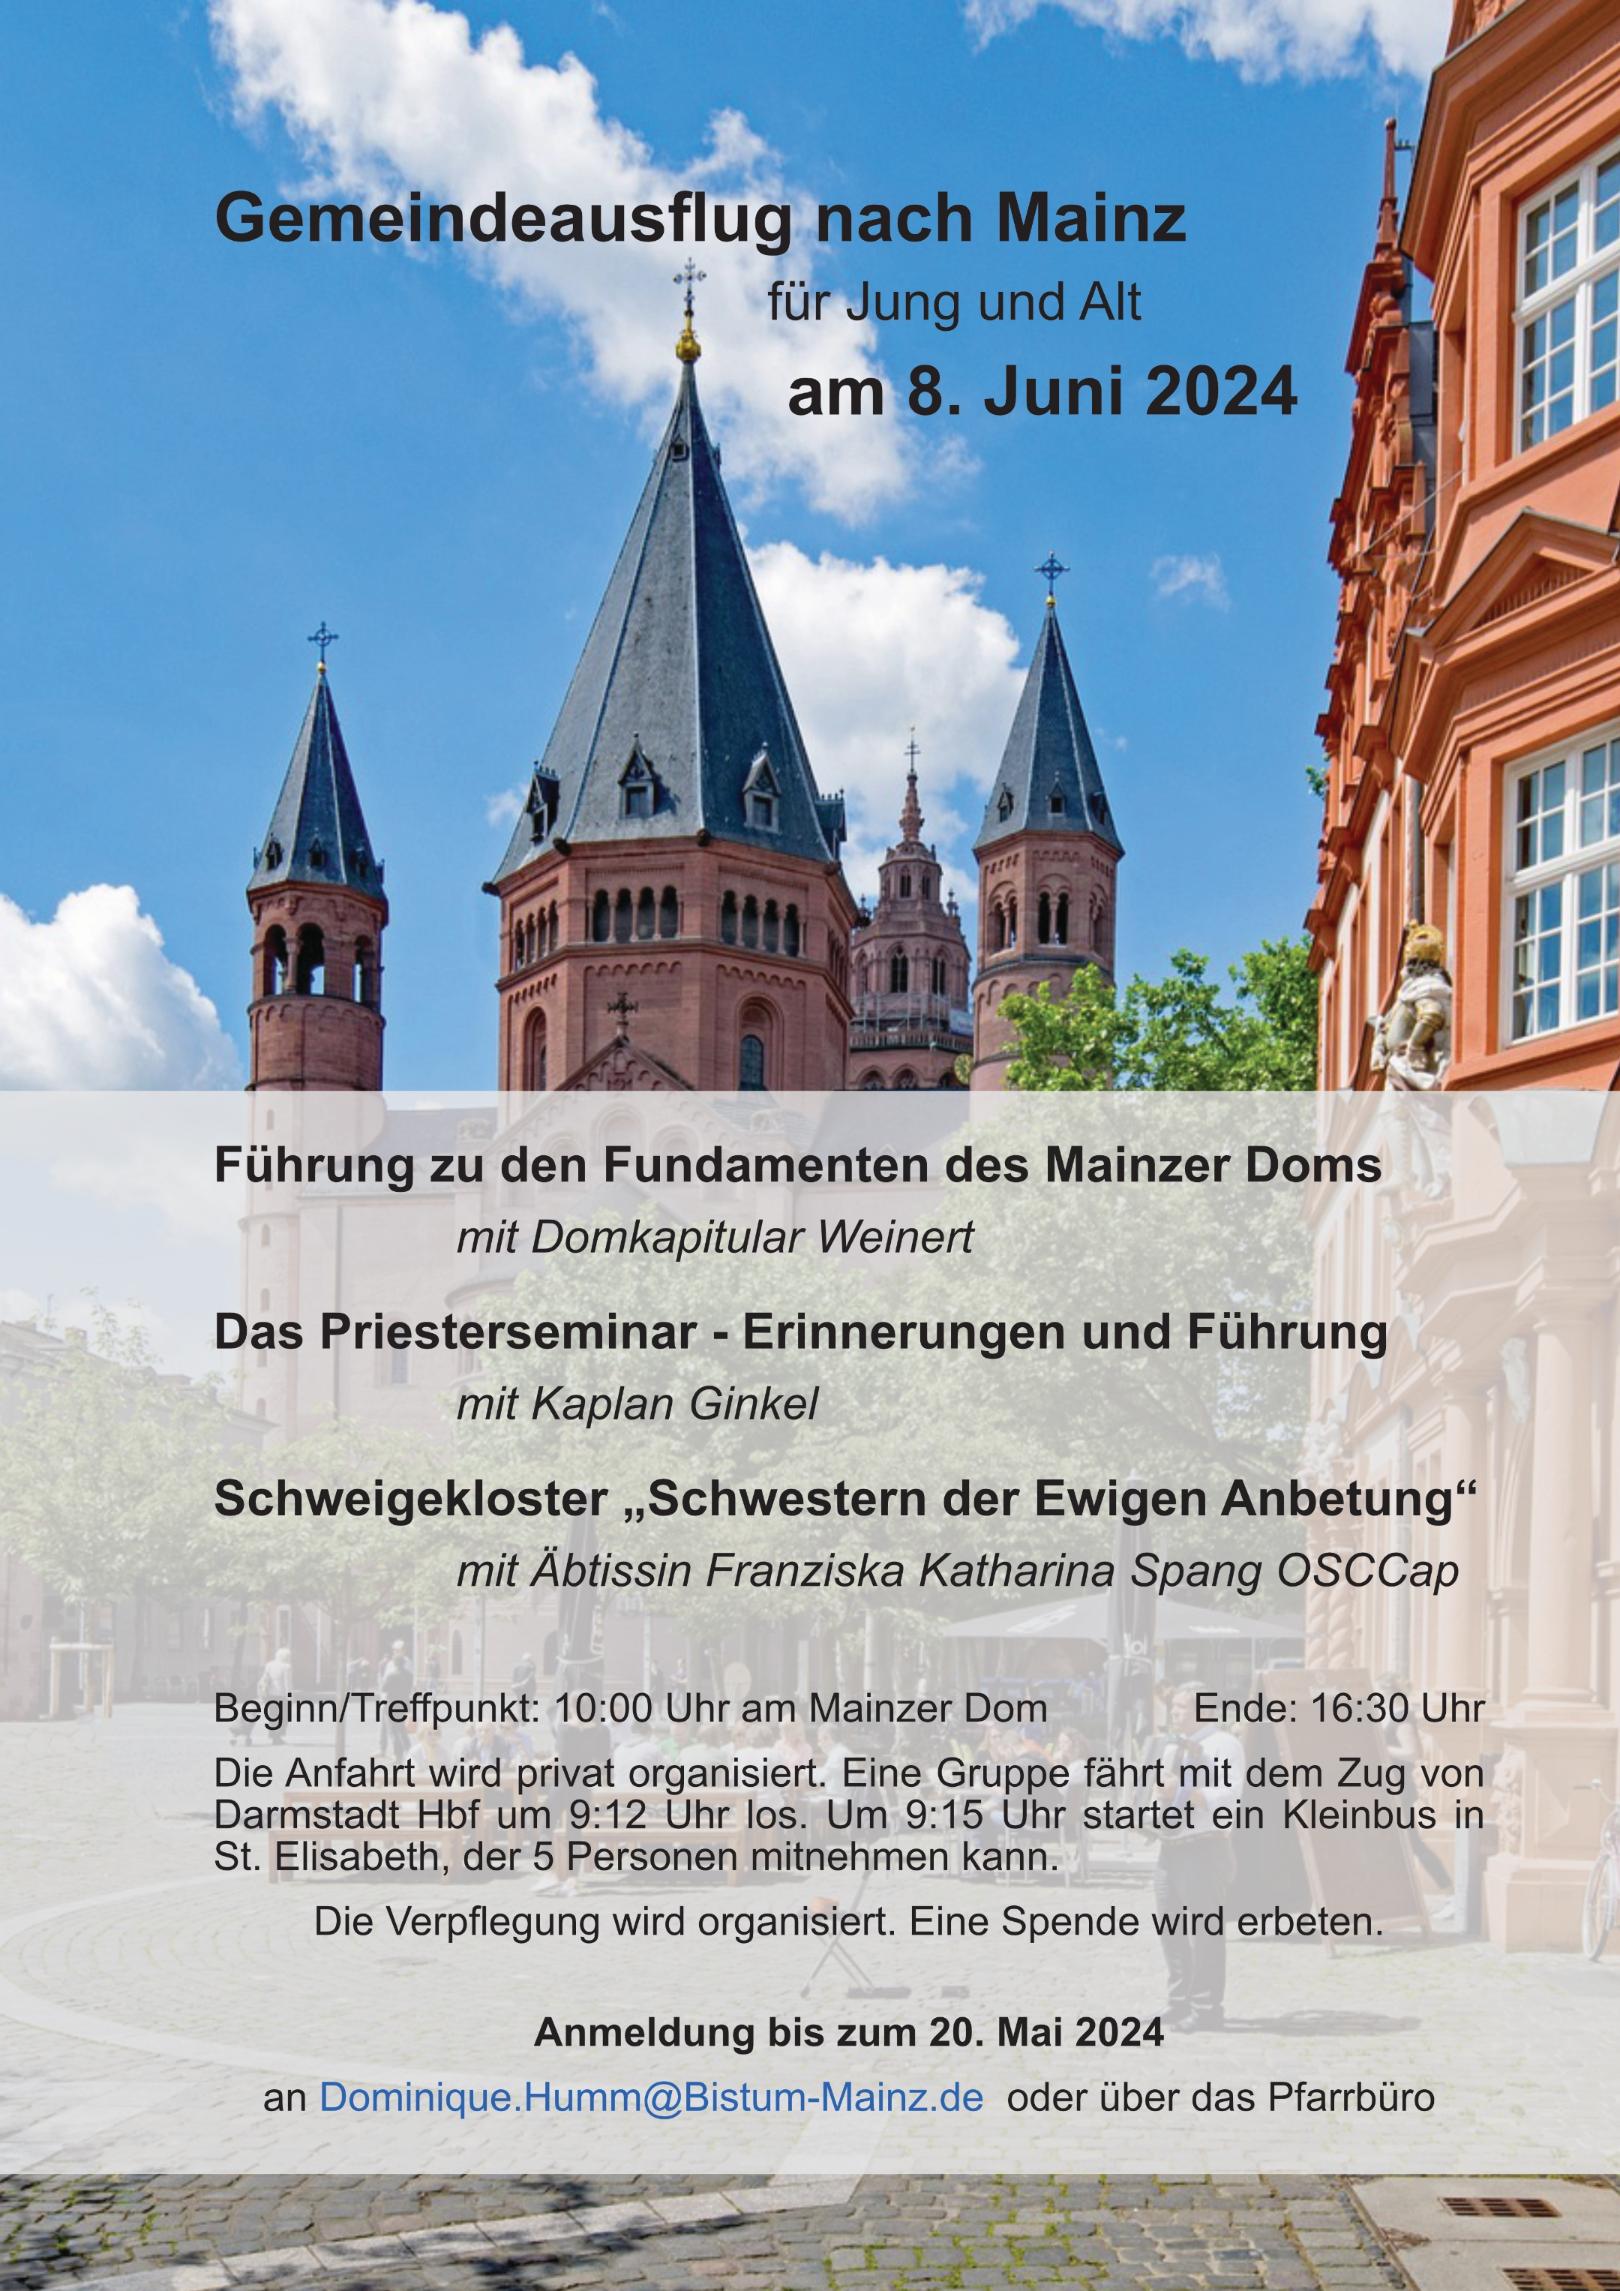 Plakat Gemeindeausflug Mainz (c) Dominique Humm